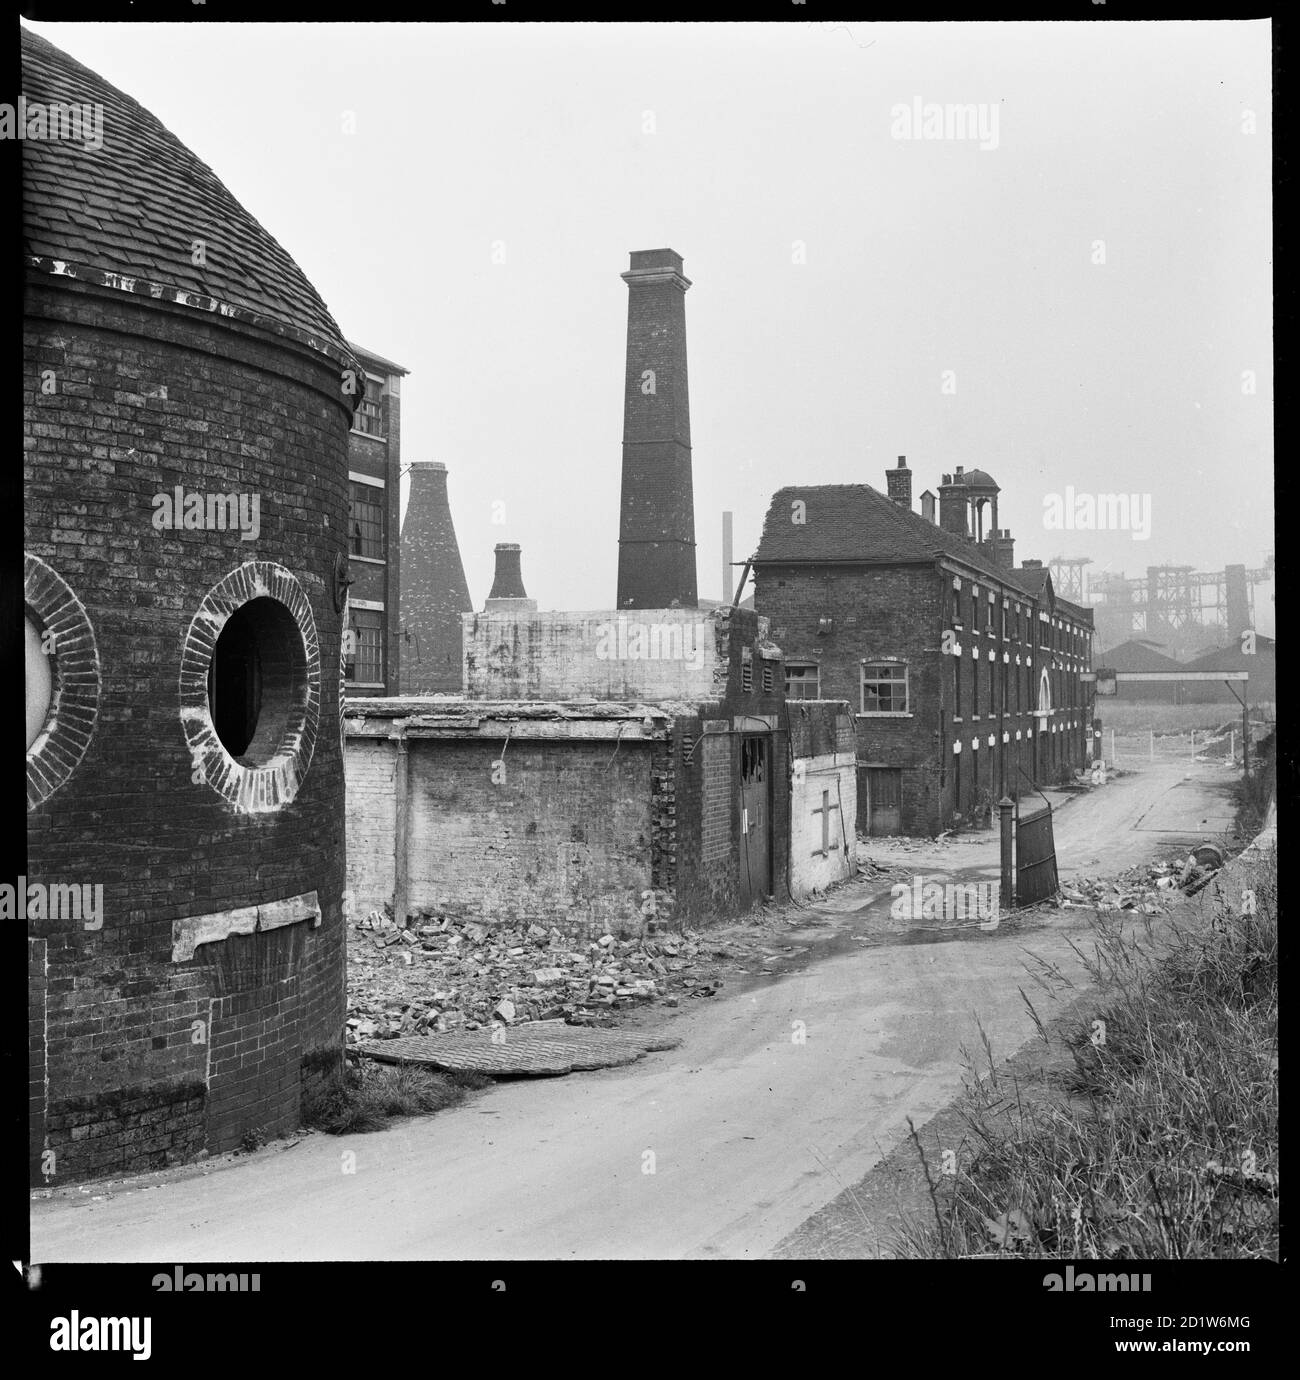 Josiah Wedgwoods Etruria Töpferarbeiten während des Abrisses, vom Treidelpfad des Trent and Mersey Canal mit dem Round House im Vordergrund betrachtet, Etruria Road, Etruria, Stoke-on-Trent, Staffordshire, UK. Josiah Wedgwood eröffnete seine Etruria Werke neben dem Trent und Mersey Kanal im Jahr 1769. 1938 wurde in Barlaston eine neue Fabrik errichtet, und die Produktion wurde schrittweise von Etruria weg verlagert. Das Rundhaus (erbaut um 1769), das angeblich zum Schleifen von Rohstoffen, als Zählhaus und als Stall verwendet wurde, ist heute das einzige erhaltene Bauwerk. Stockfoto